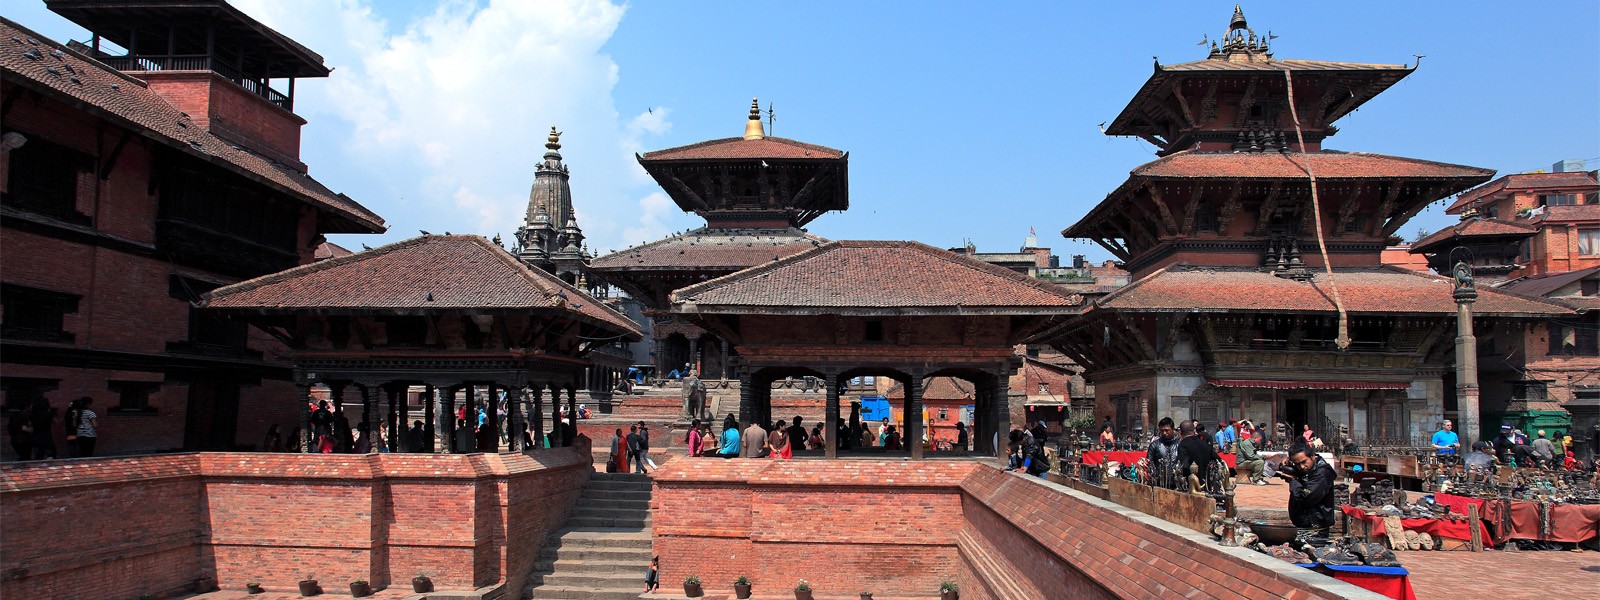 Kathmandu - Lhasa City Tour - 9 Days